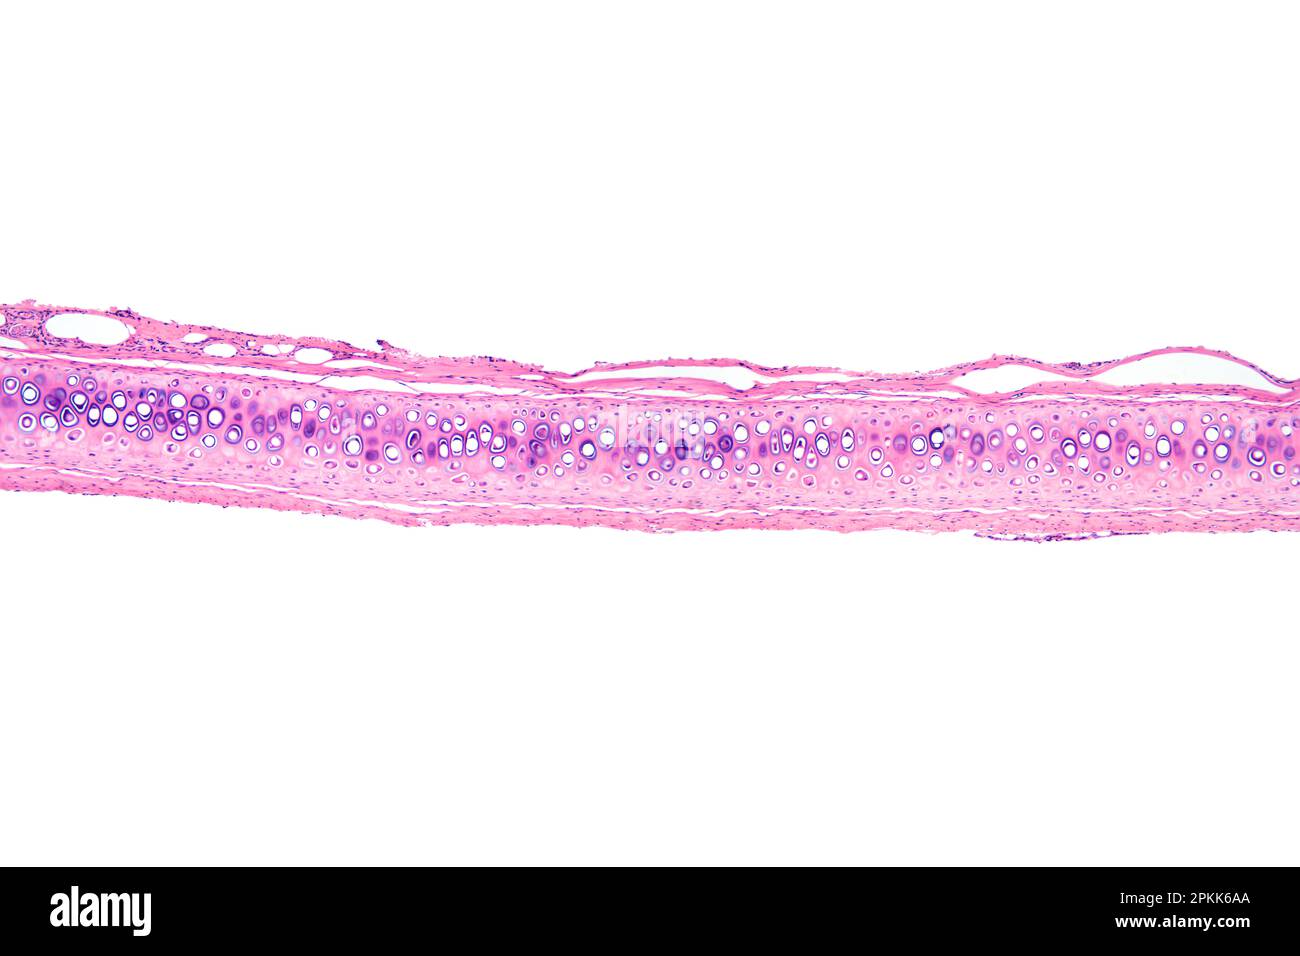 Cellule ossee, sezione, micrografia a luce 20X. Osso compatto con osteoni o sistema o canali haversiani, colorato con ematossilina-eosina, al microscopio ottico. Foto Stock